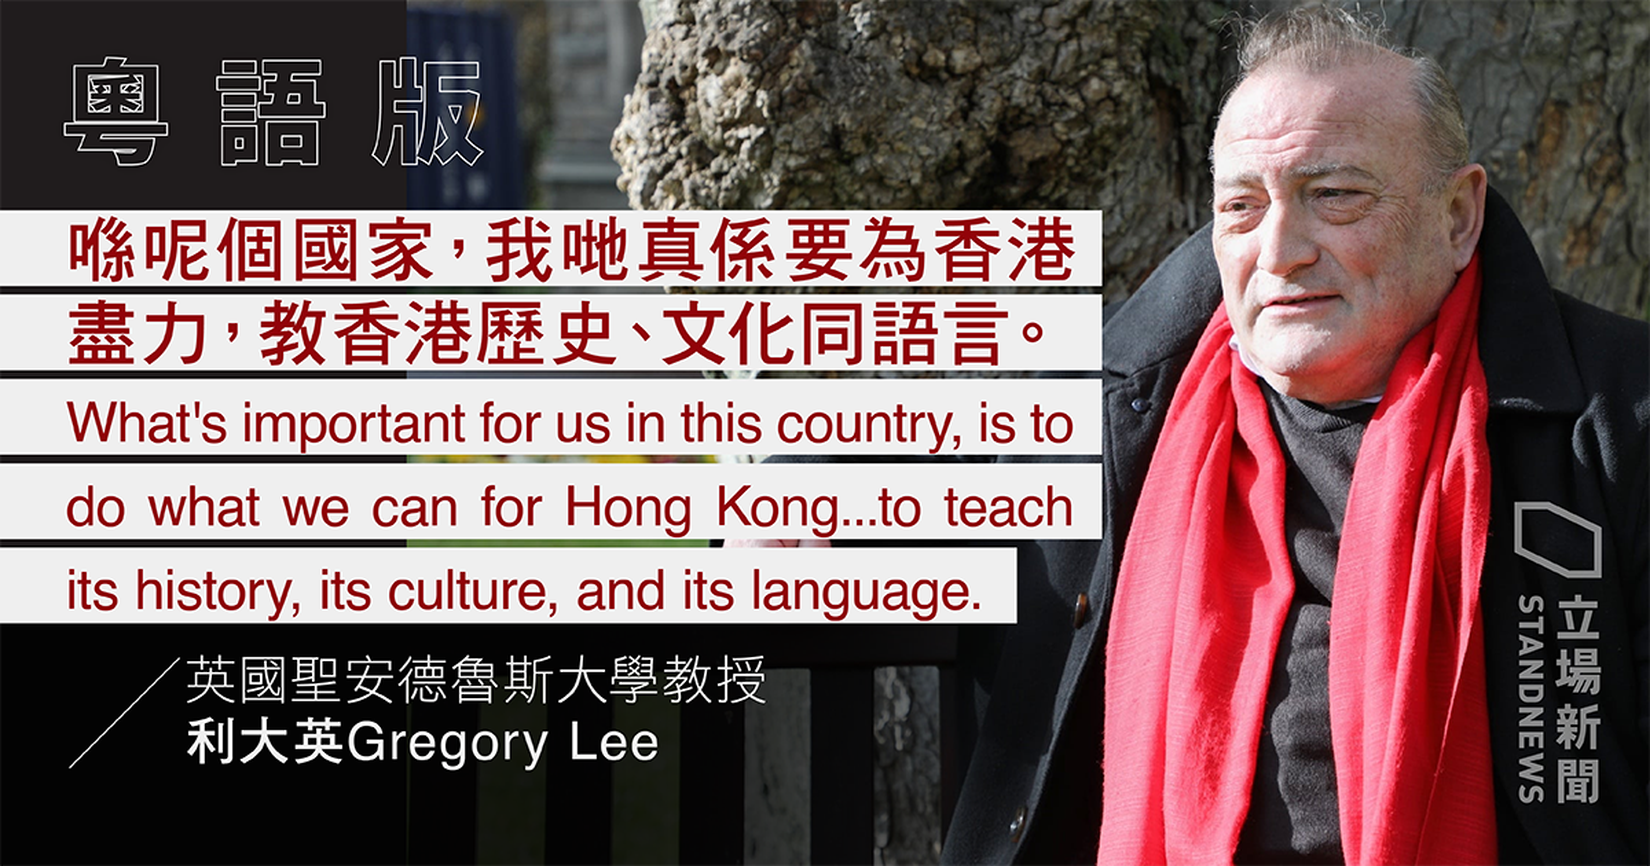 【專訪】喺英國名牌大學創辦香港文化課程　利大英點睇半世紀香港變遷？